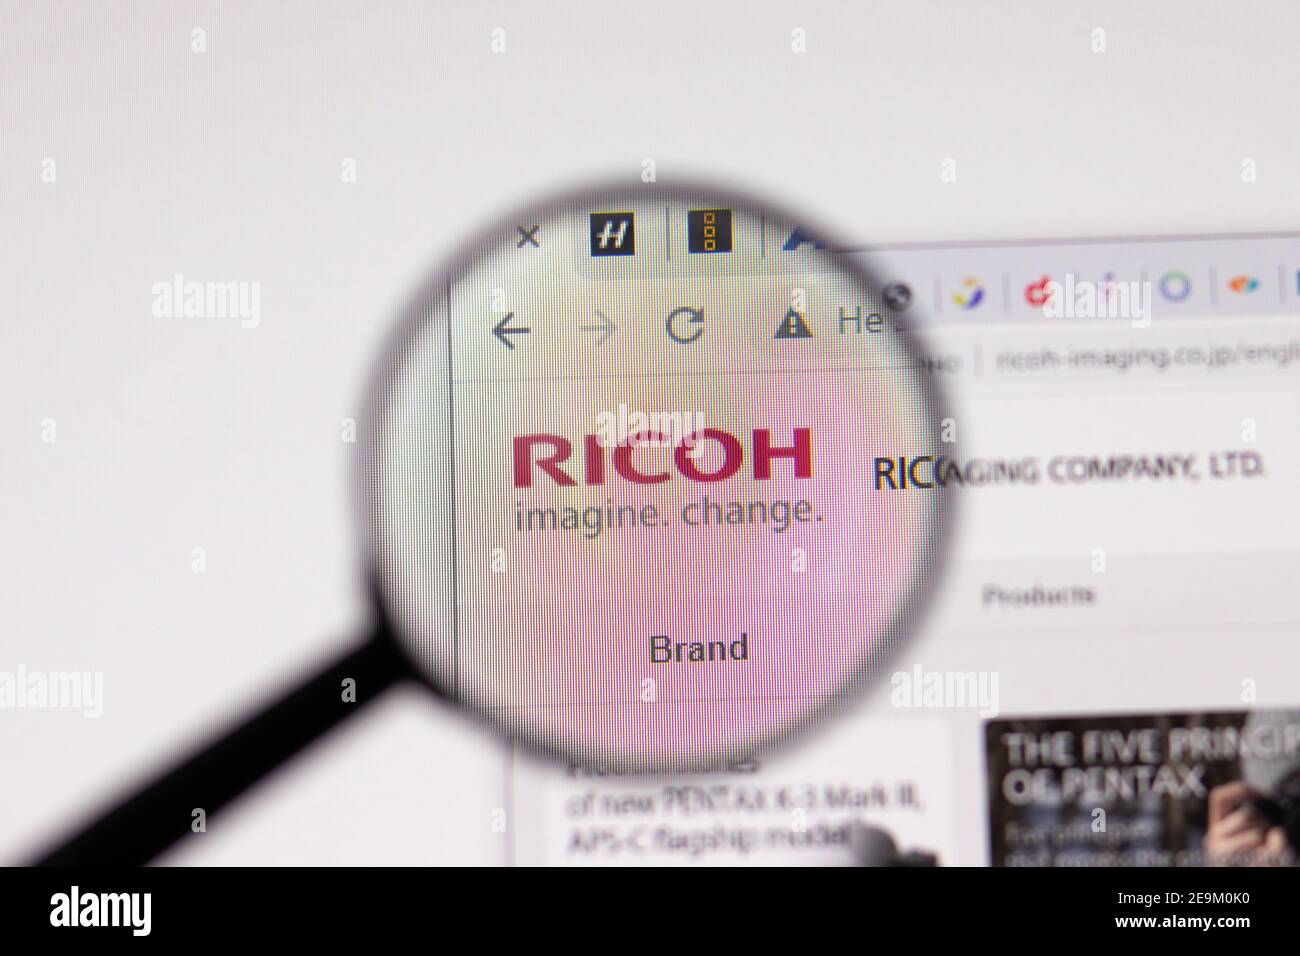 Los Angeles, USA - 1 Febbraio 2021: Pagina del sito Pentax Ricoh Imaging. ricoh-imaging.co.jp logo sullo schermo, Editoriale illustrativo Foto Stock